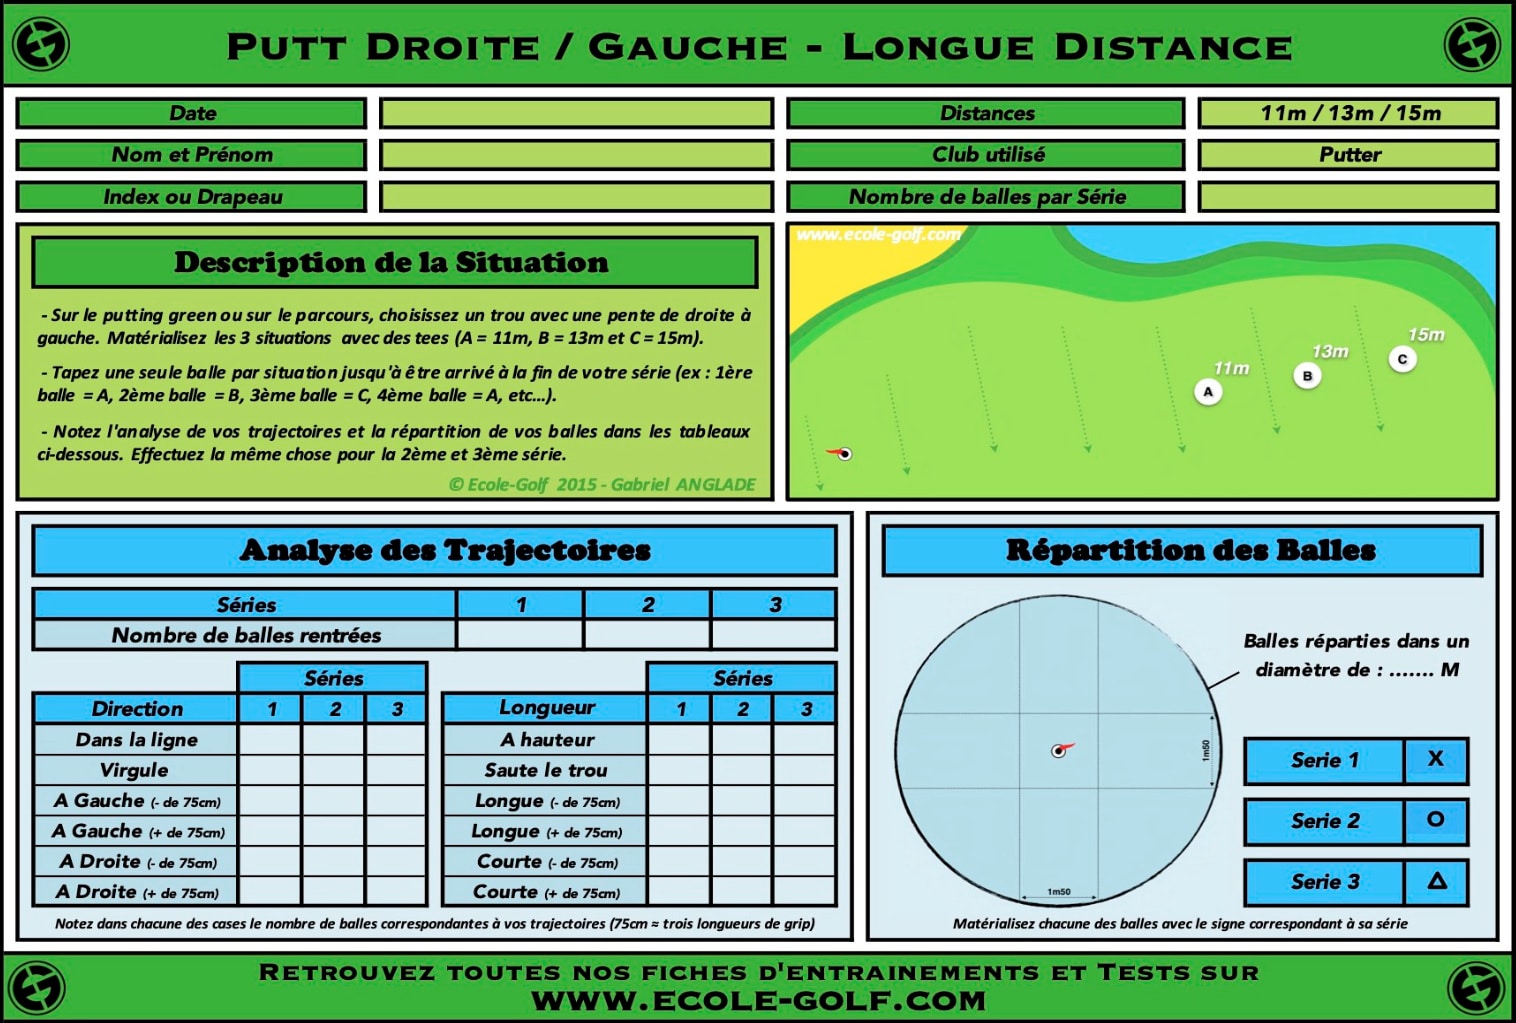 Putt Droite Gauche - Longue Distance